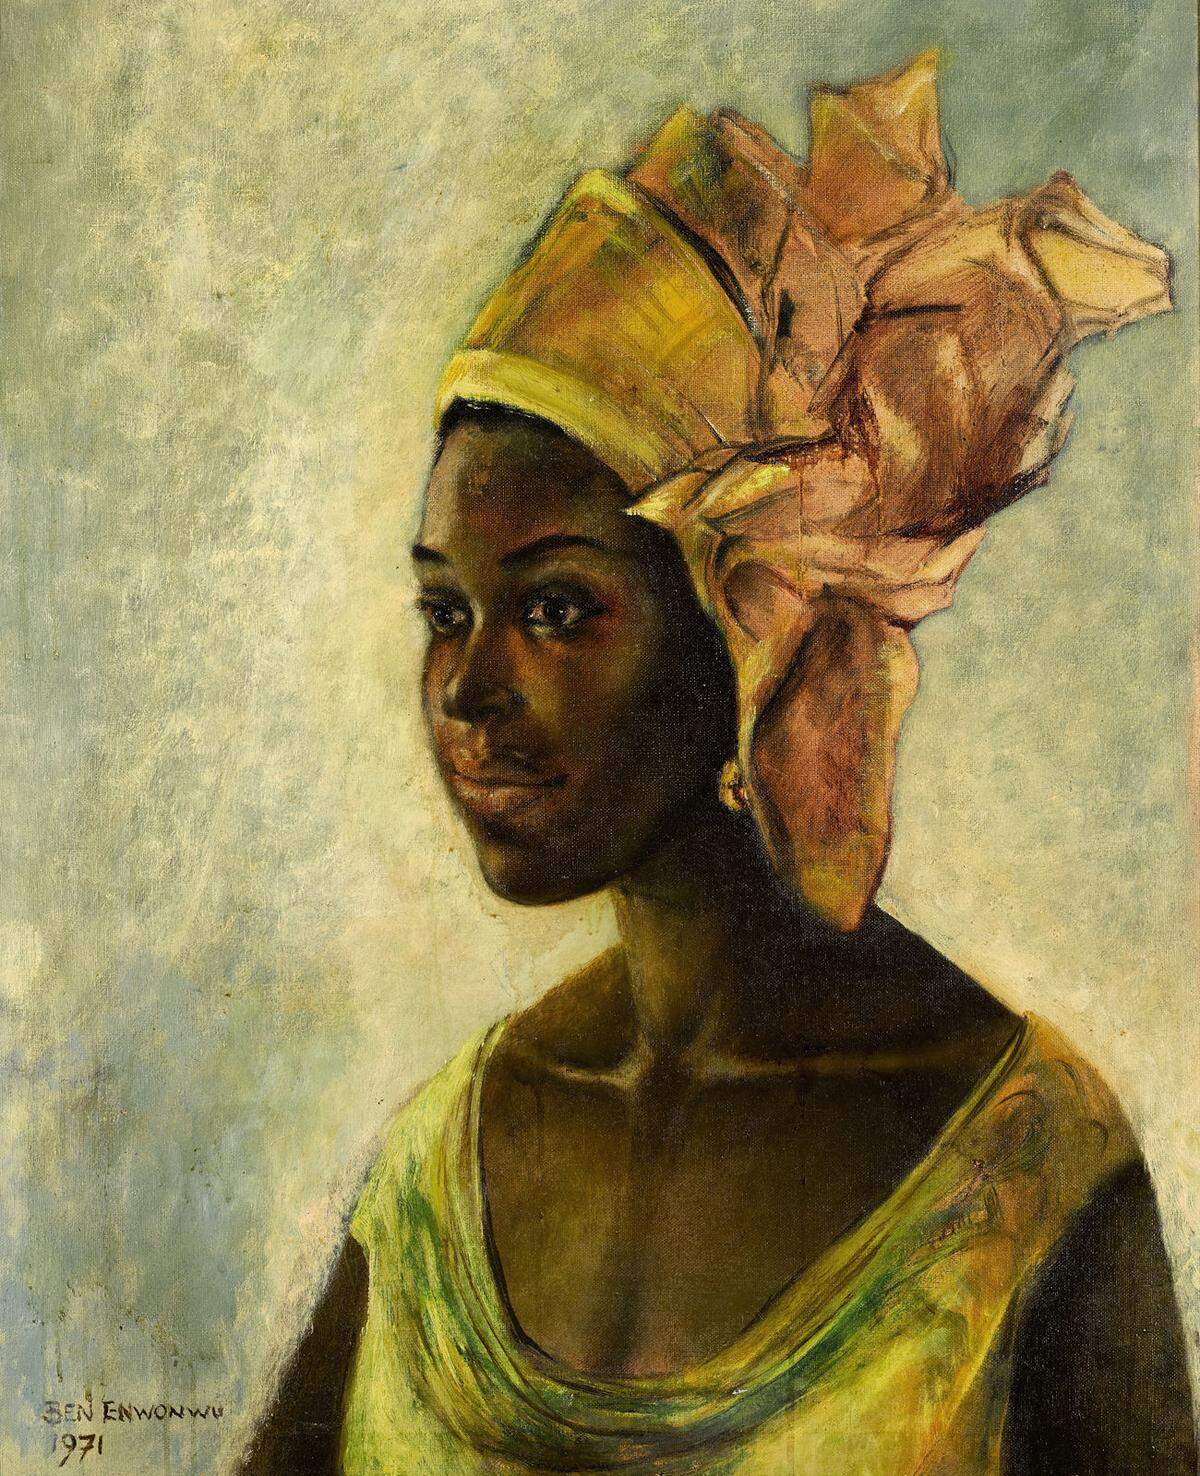 Frühwerk. Ben Enwonwus Por­trät „Christine“ stieg bei Sotheby’s auf 1,1 Millionen Pfund.